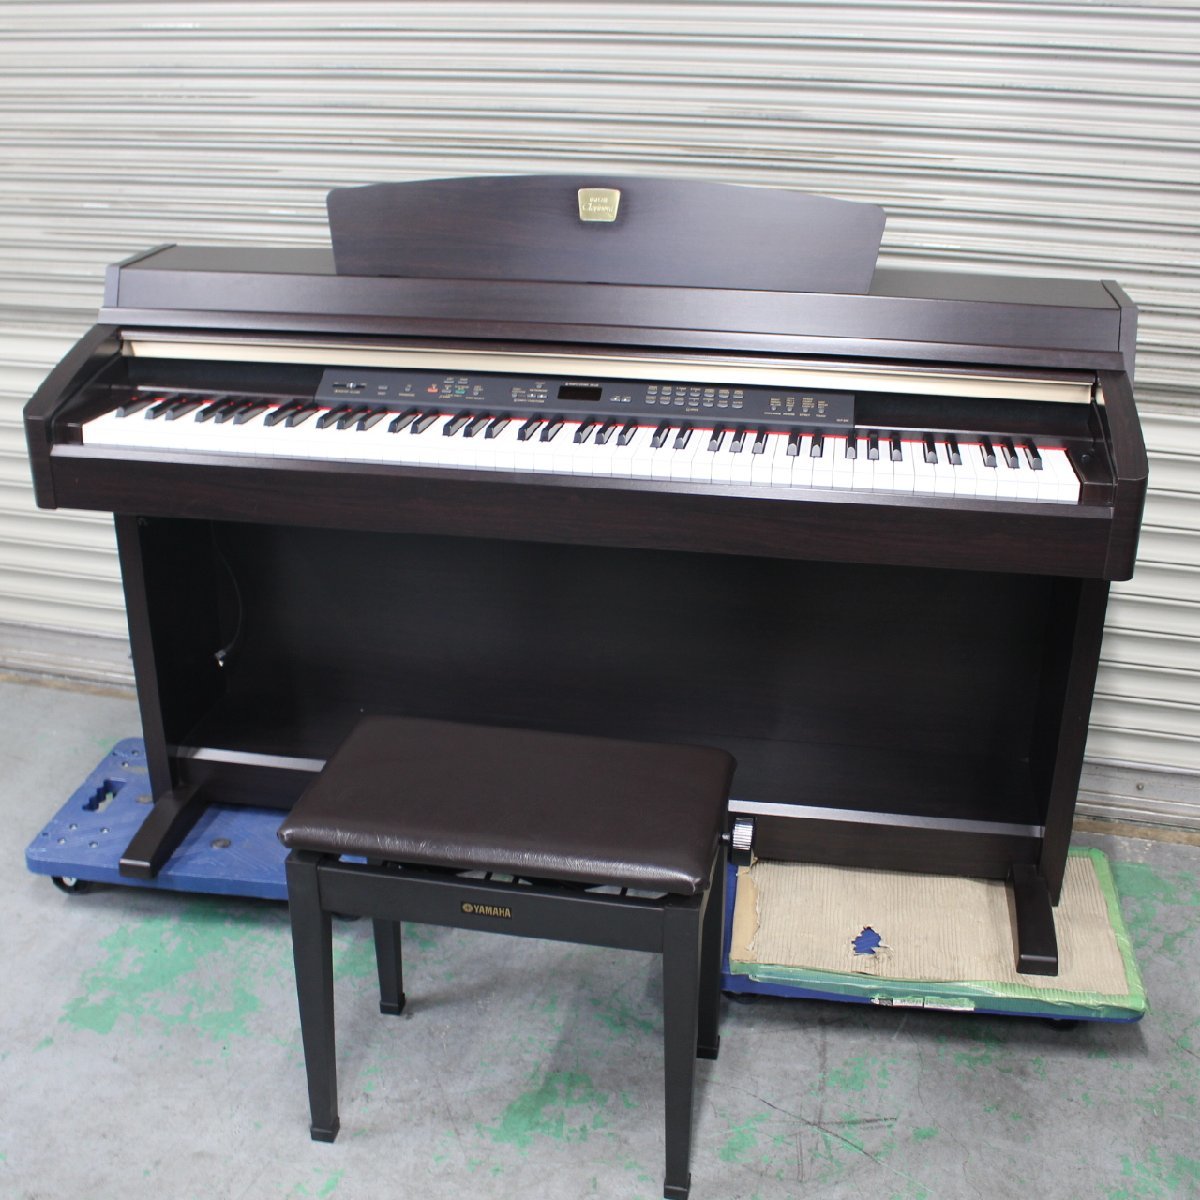 東京都武蔵野市にて ヤマハ 電子ピアノ CLP-230 Clavinova  を出張買取させて頂きました。